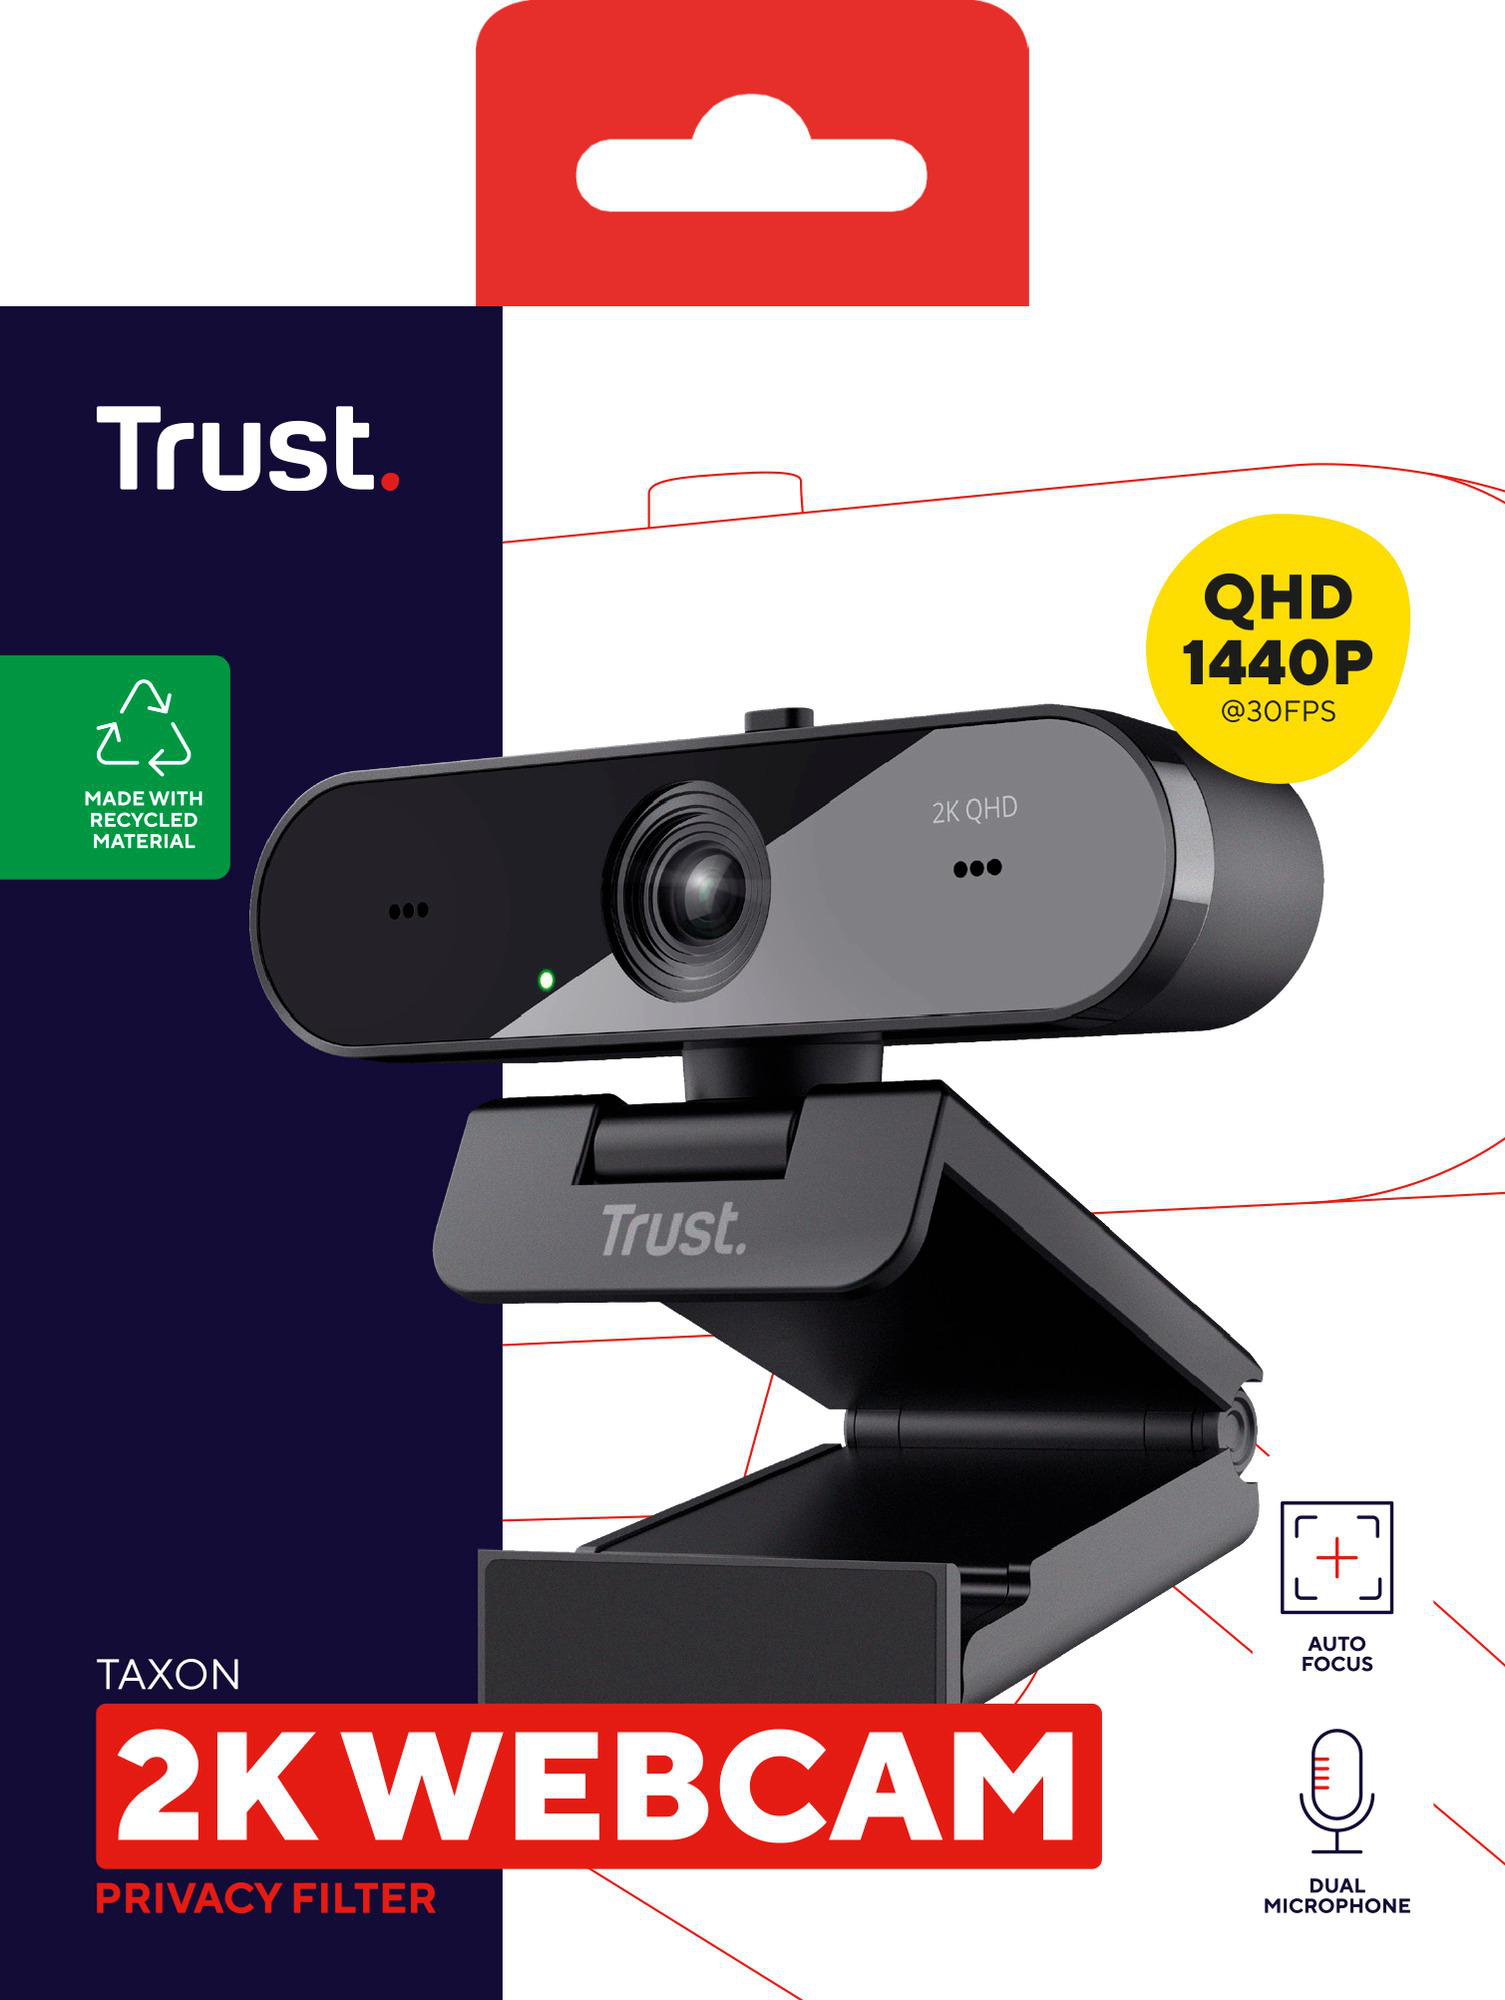 Mikrofonen Autofocus, 2K Webcam Taxon QHD, Blickschutzfilter TRUST 2 und